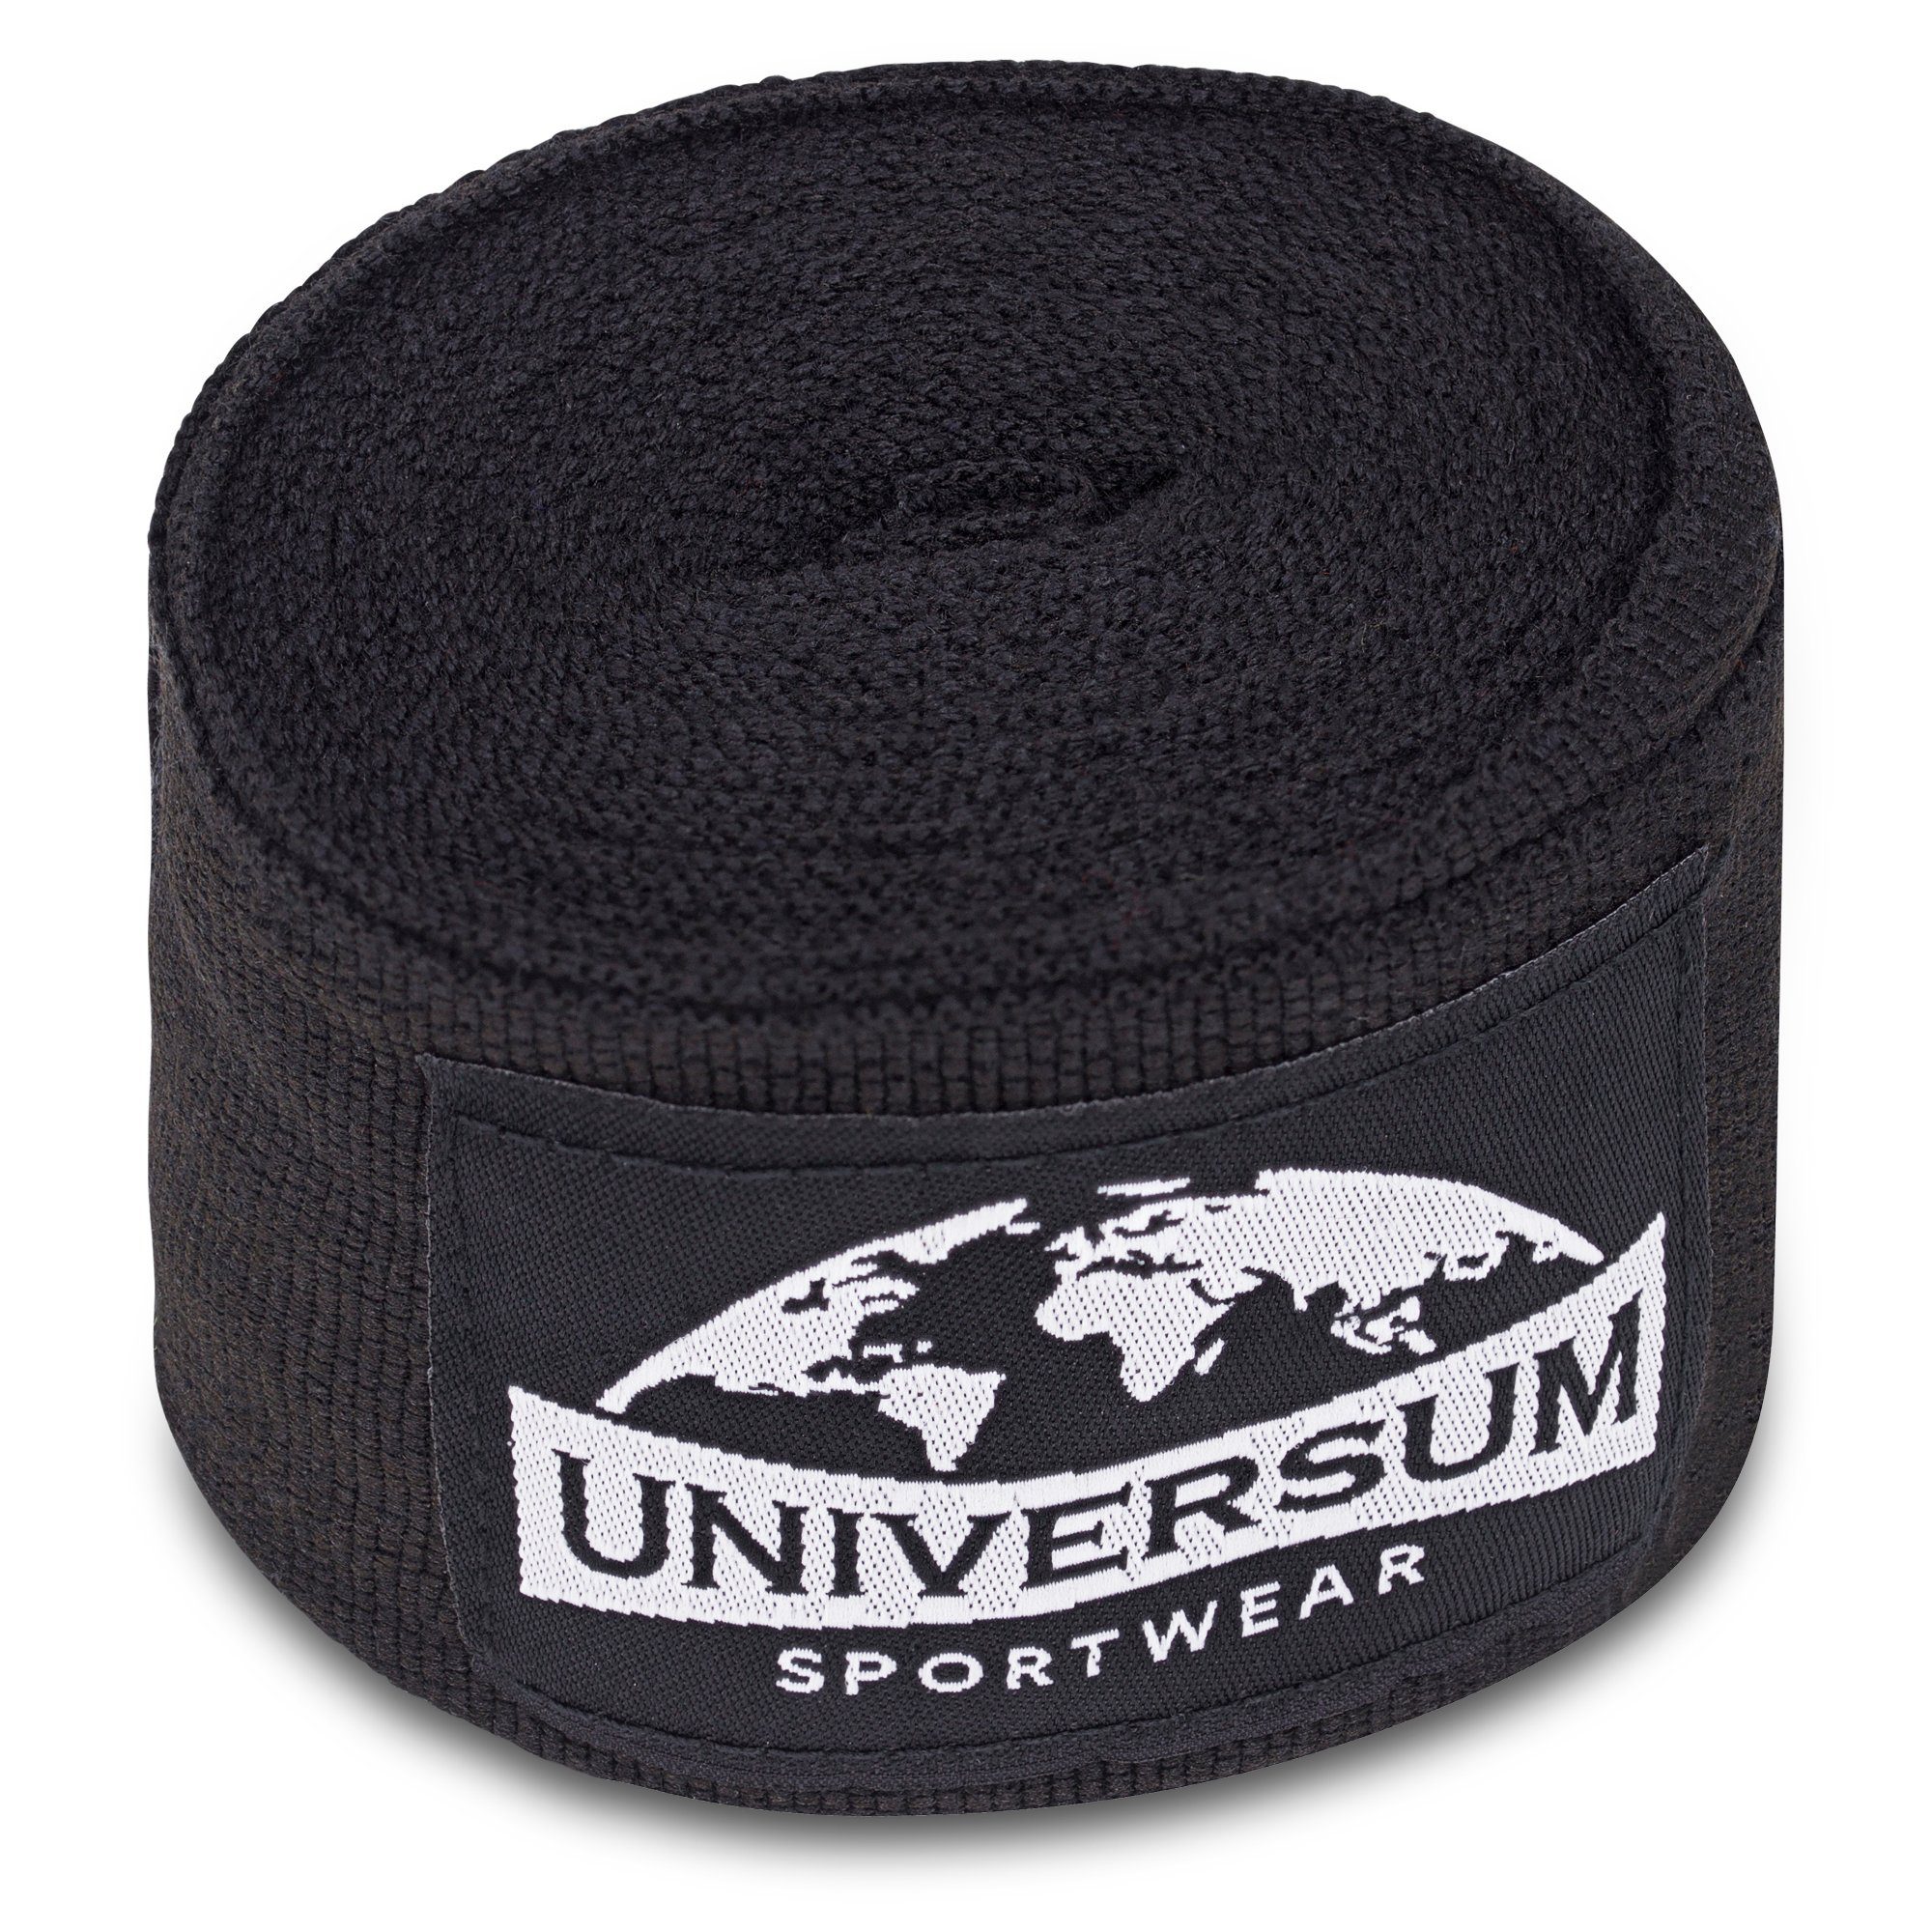 Sportwear Bandage, Universum Schwarz-Weiß langen Boxbandagen mit Klettverschluss Handgelenk